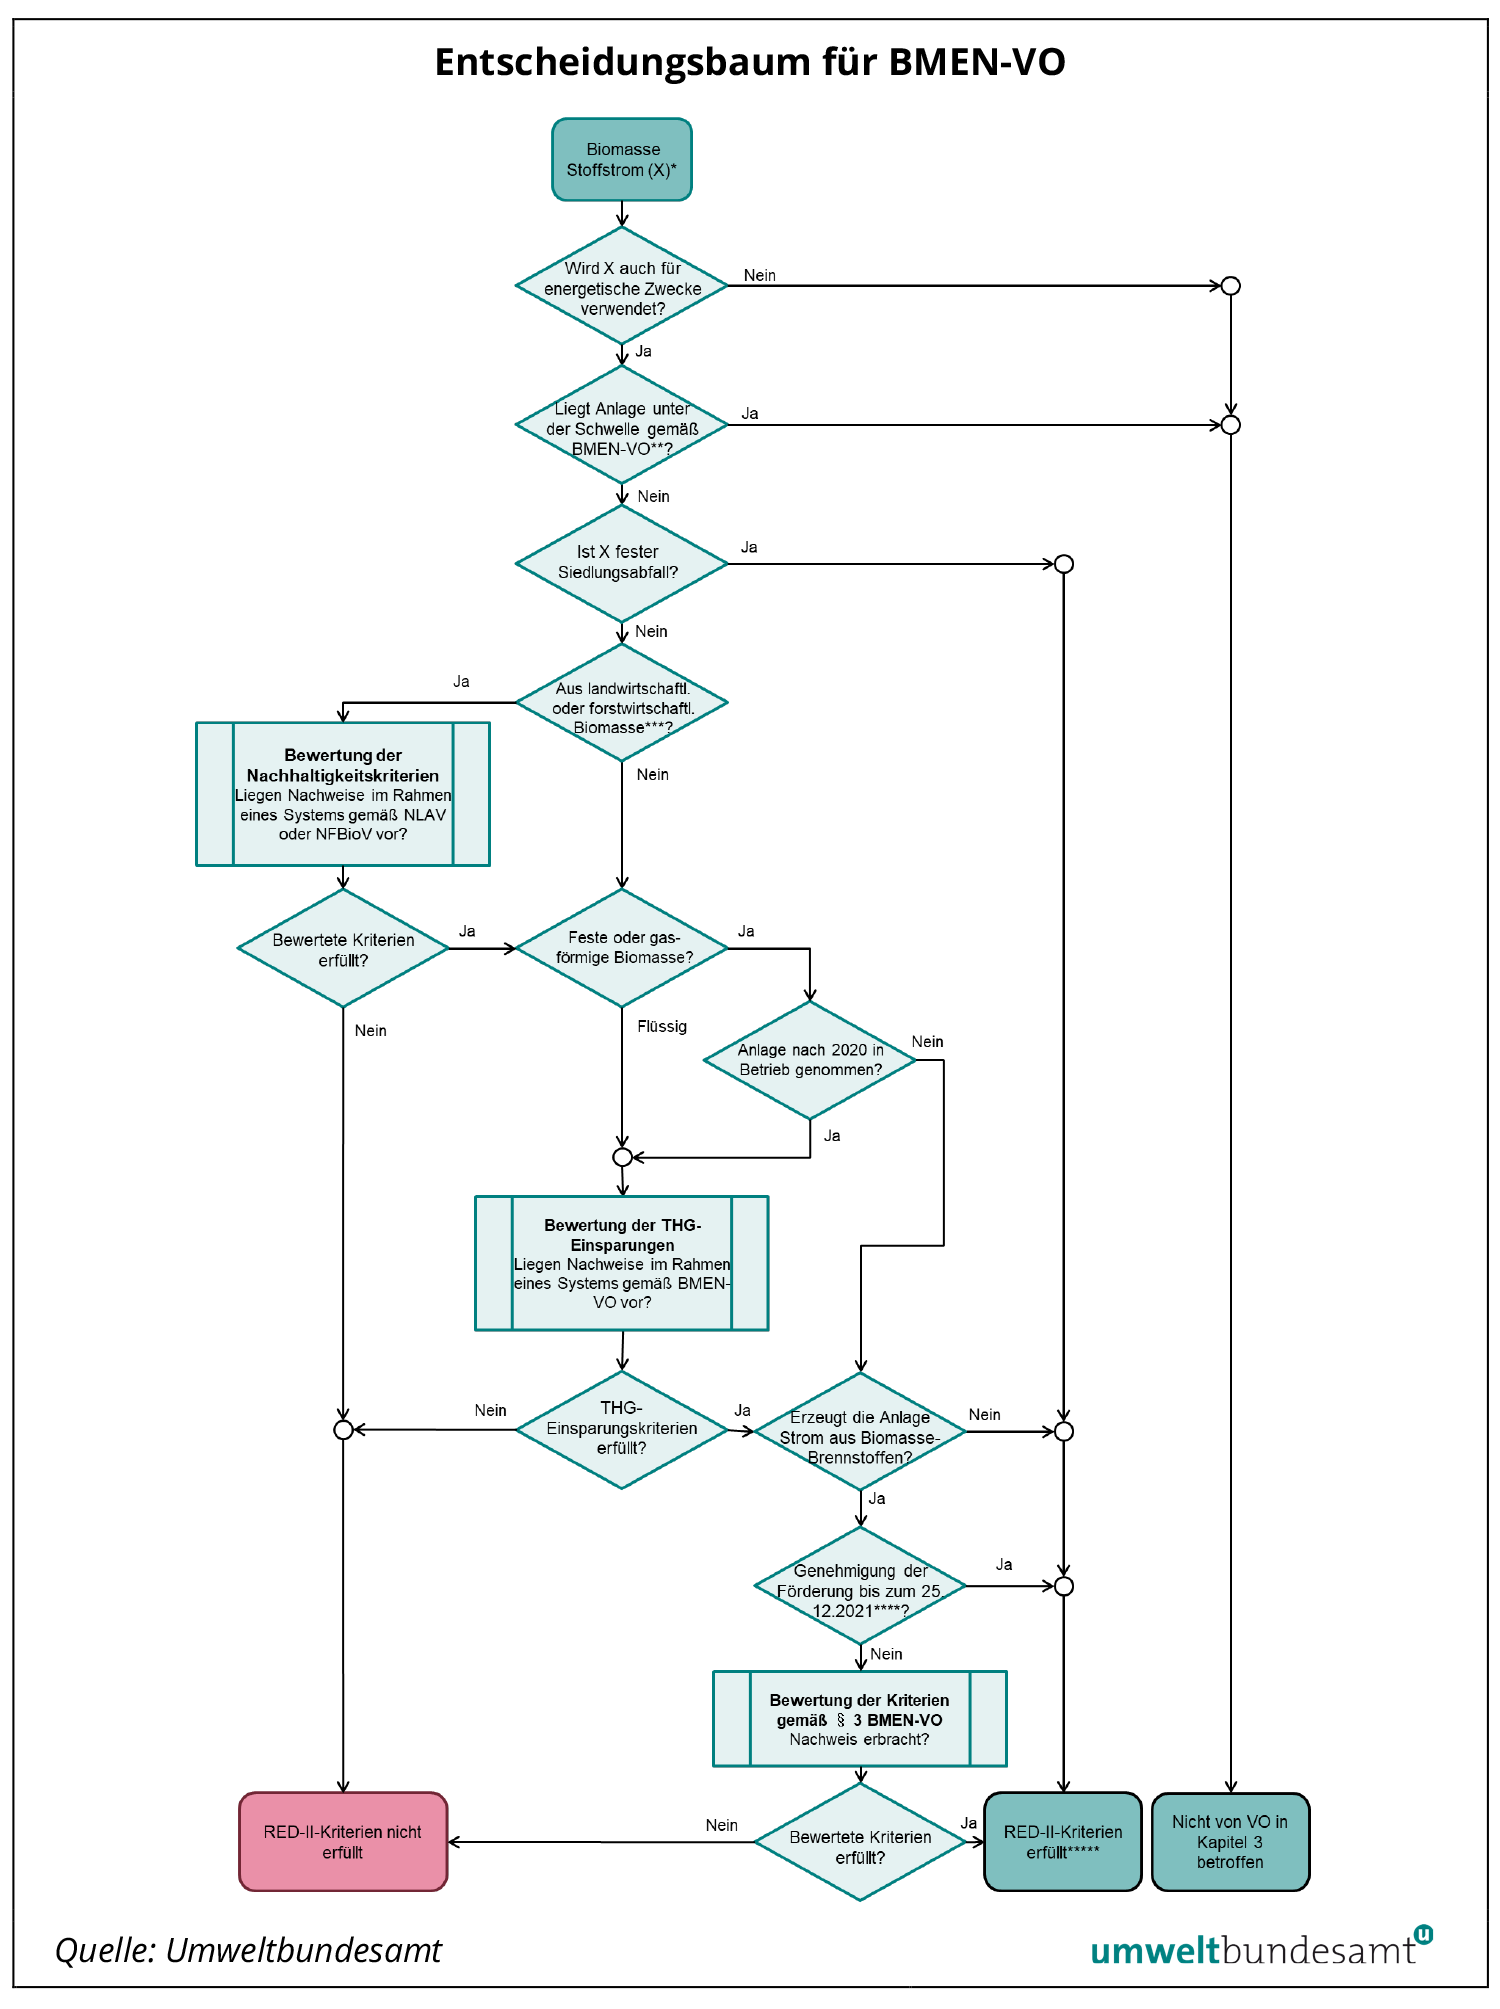 Prozessdiagramm Entscheidungsbaum für BMEN-VO